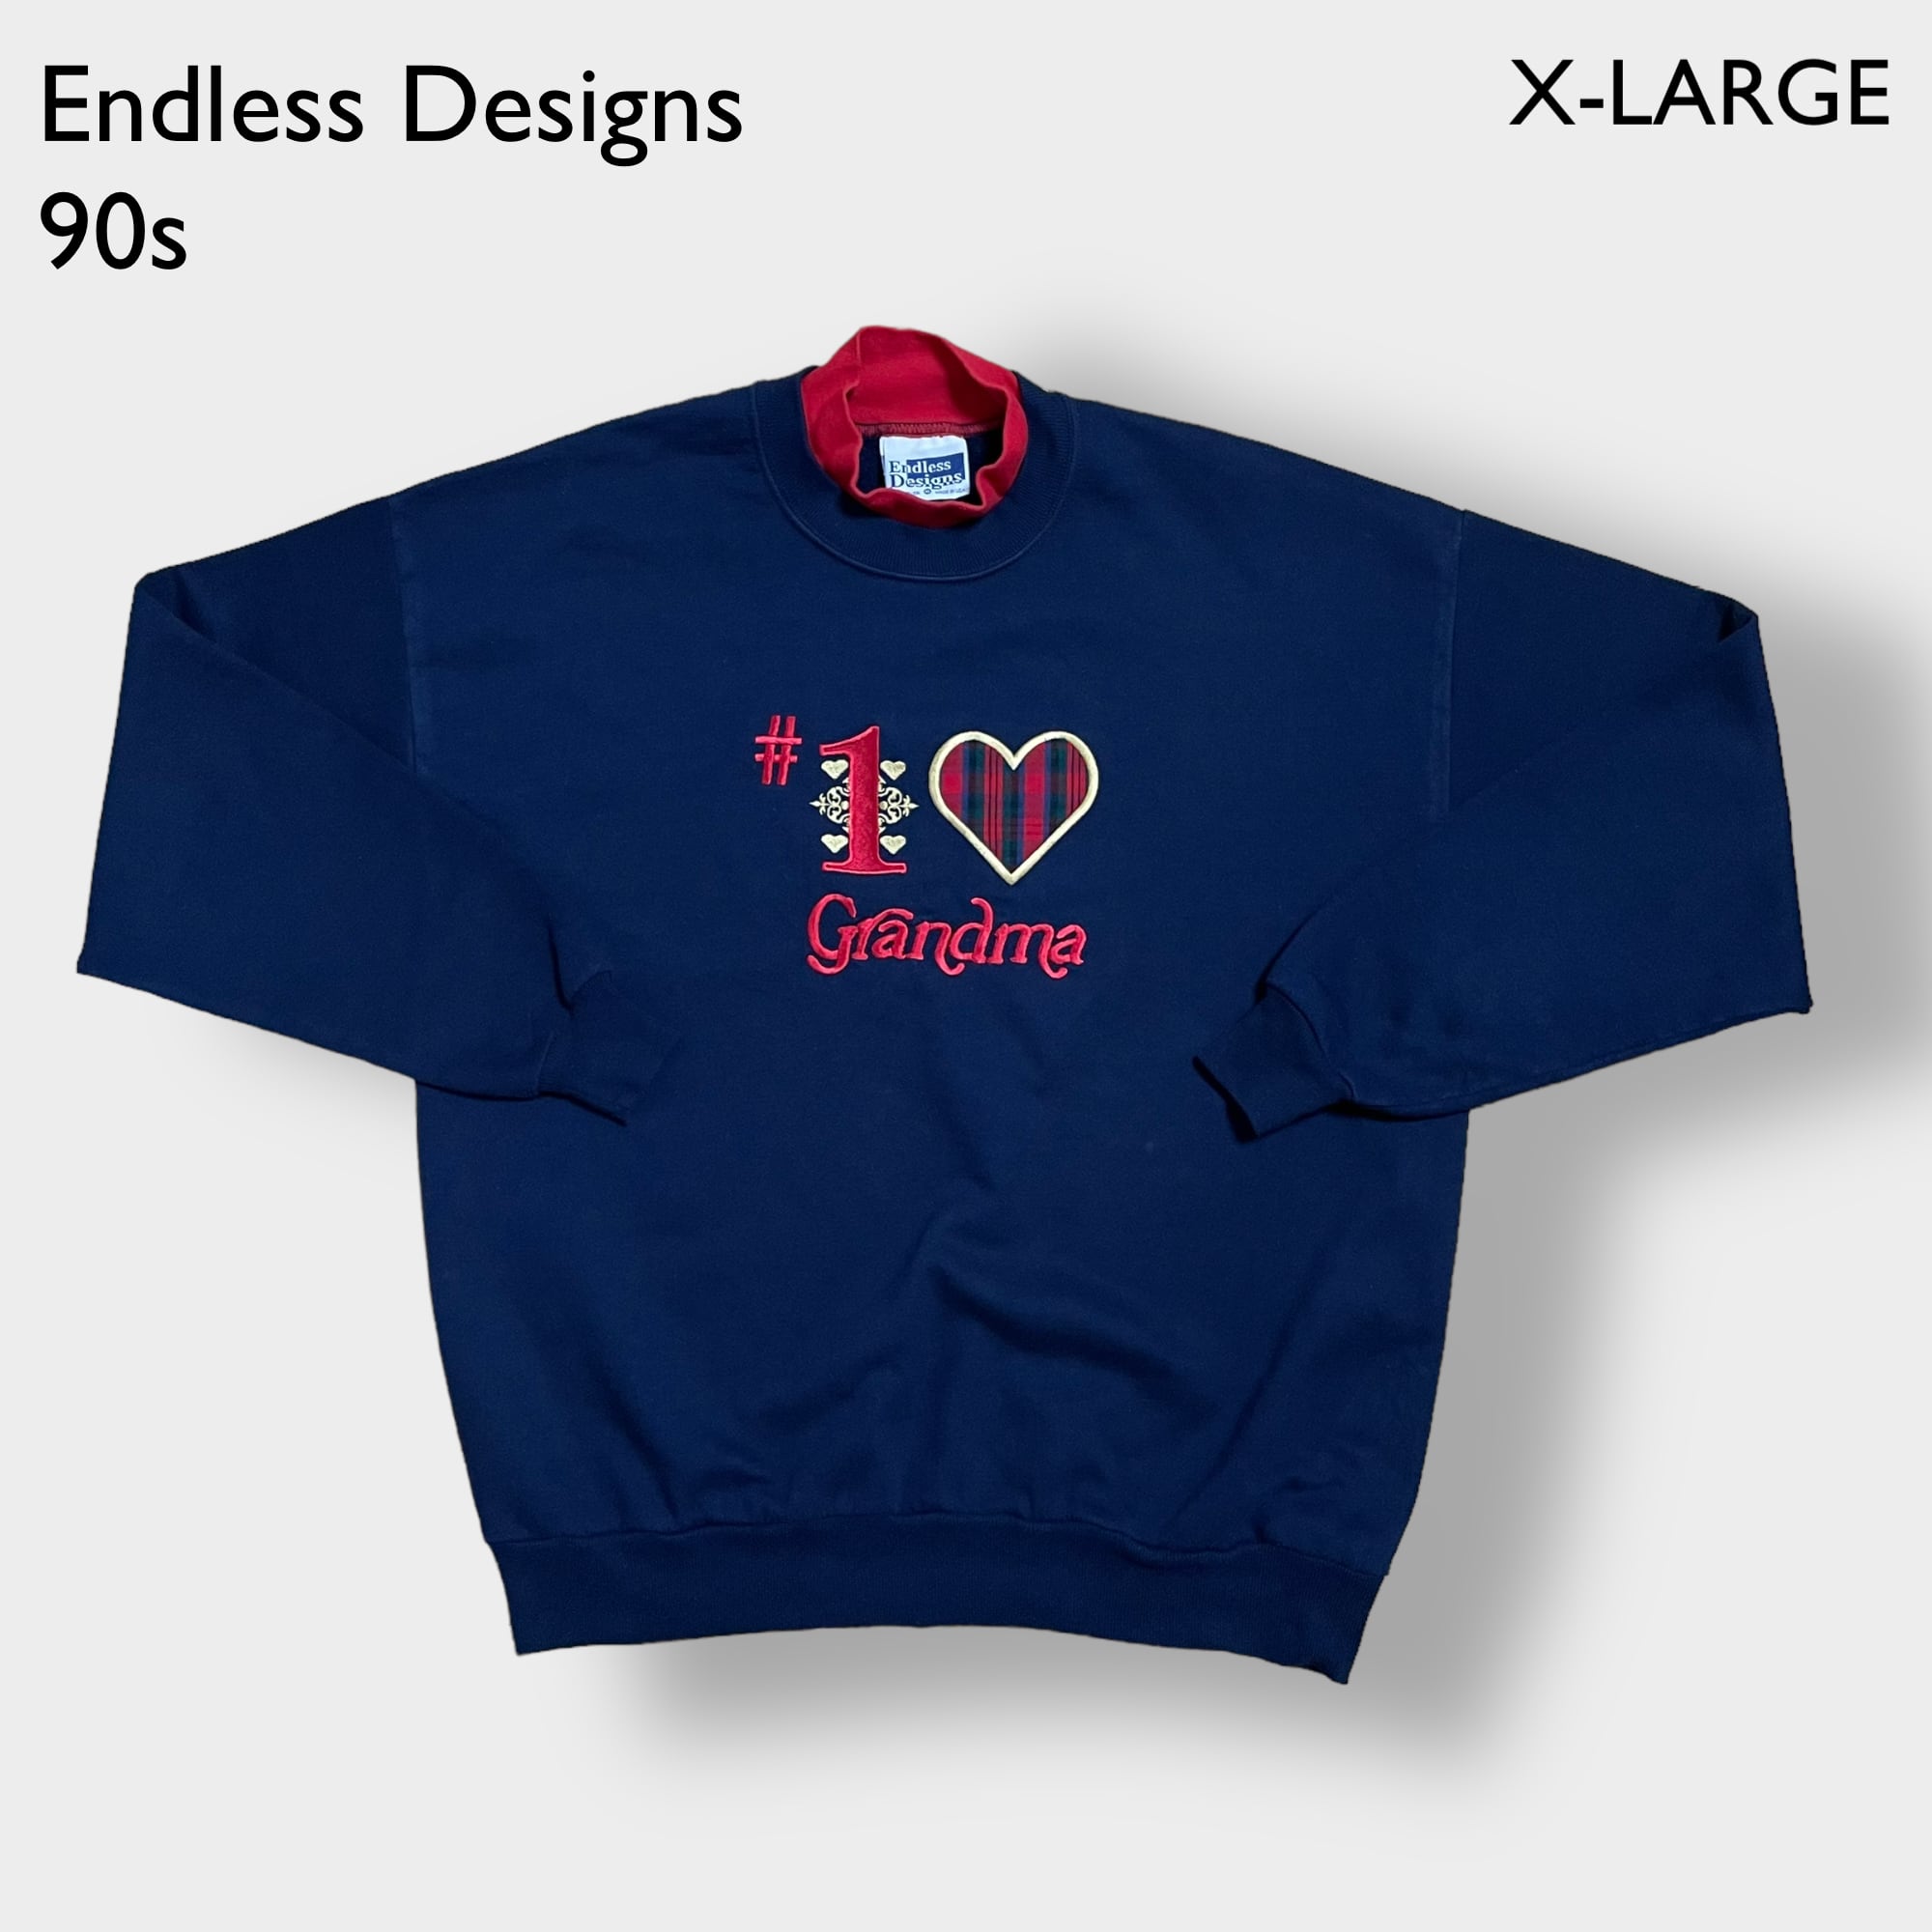 90s】Endless Designs スウェットシャツ トレーナー - スウェット